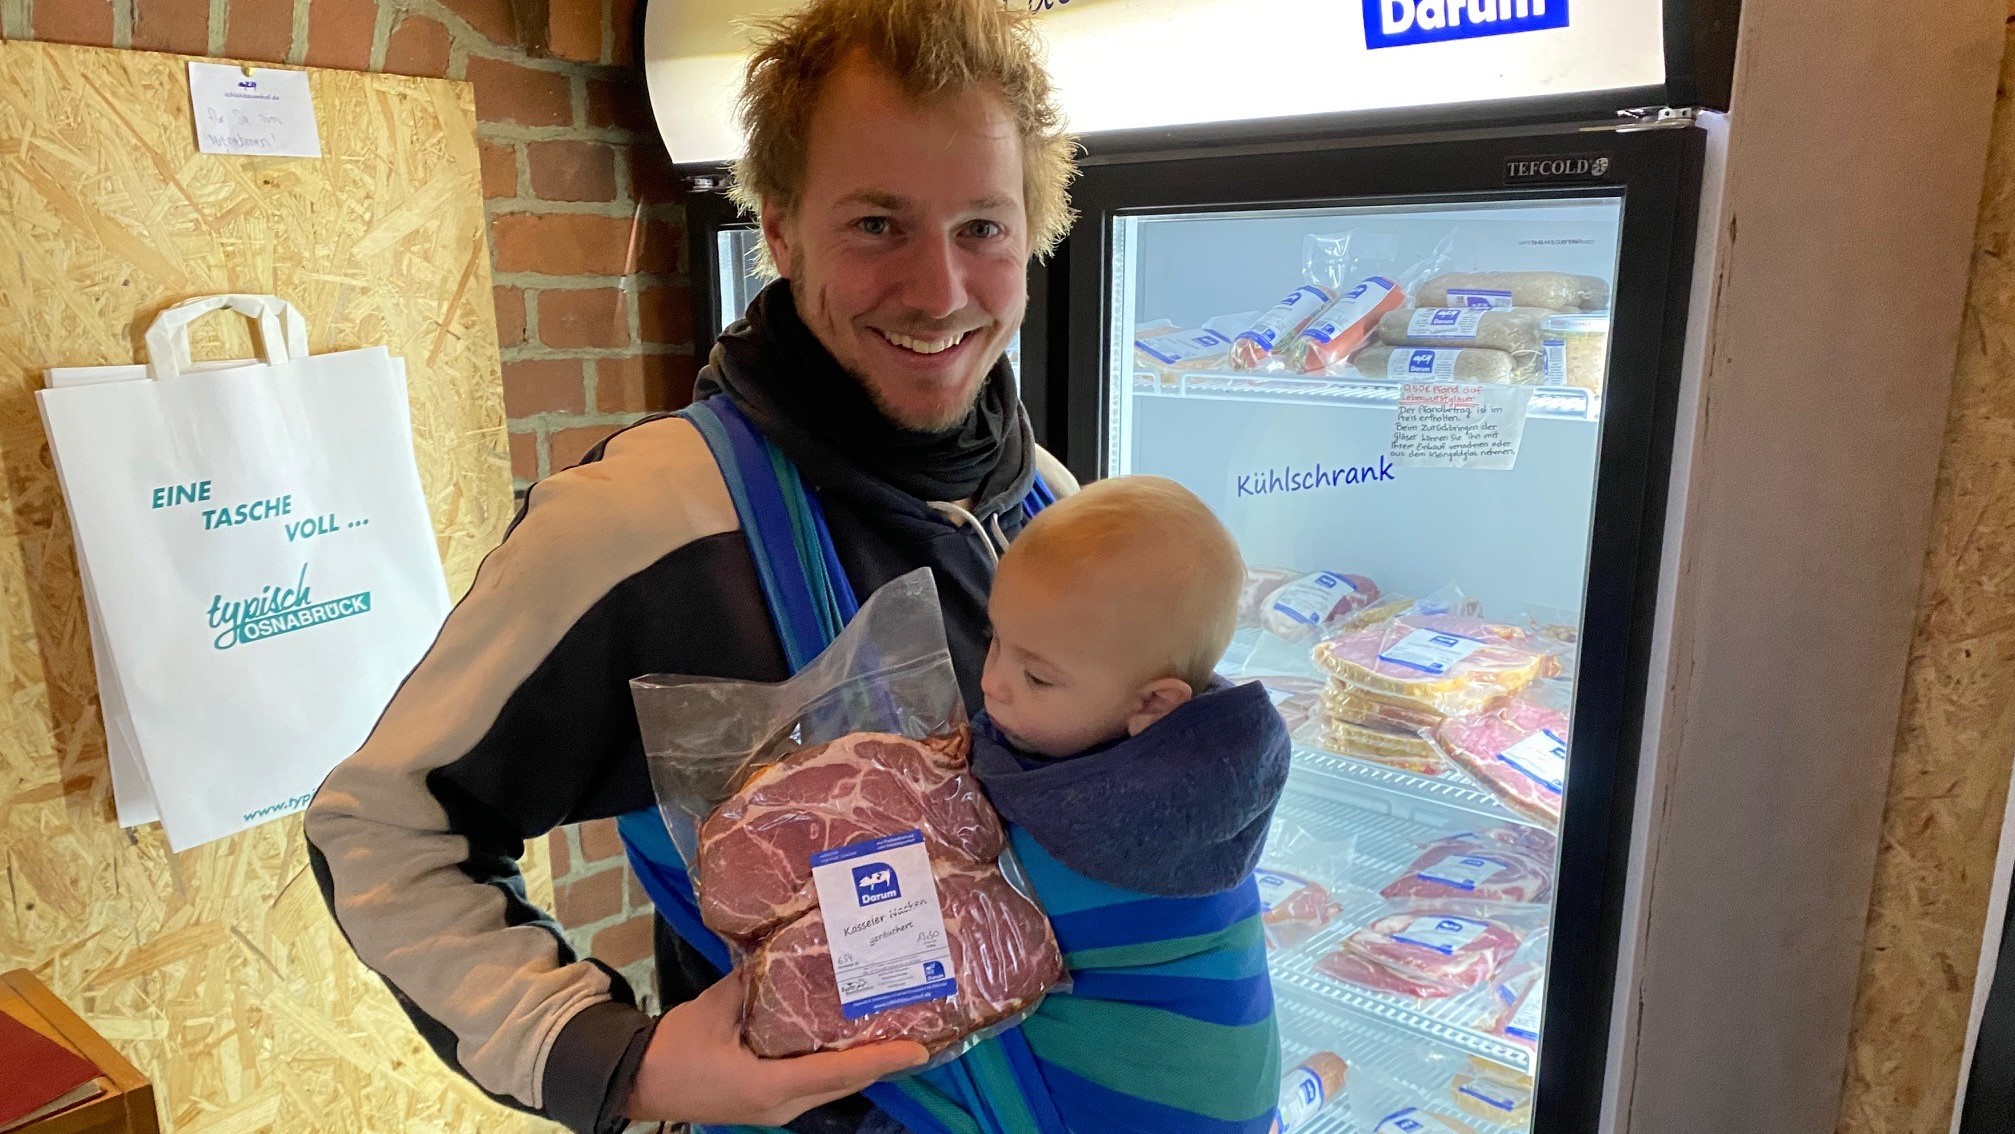 Peer Sachteleben afsætter alt kød i egen gårdbutik, som snart erstattes af et nyindrettet butikslokale i en gammel staldlænge. Her ses han med sin yngste søn